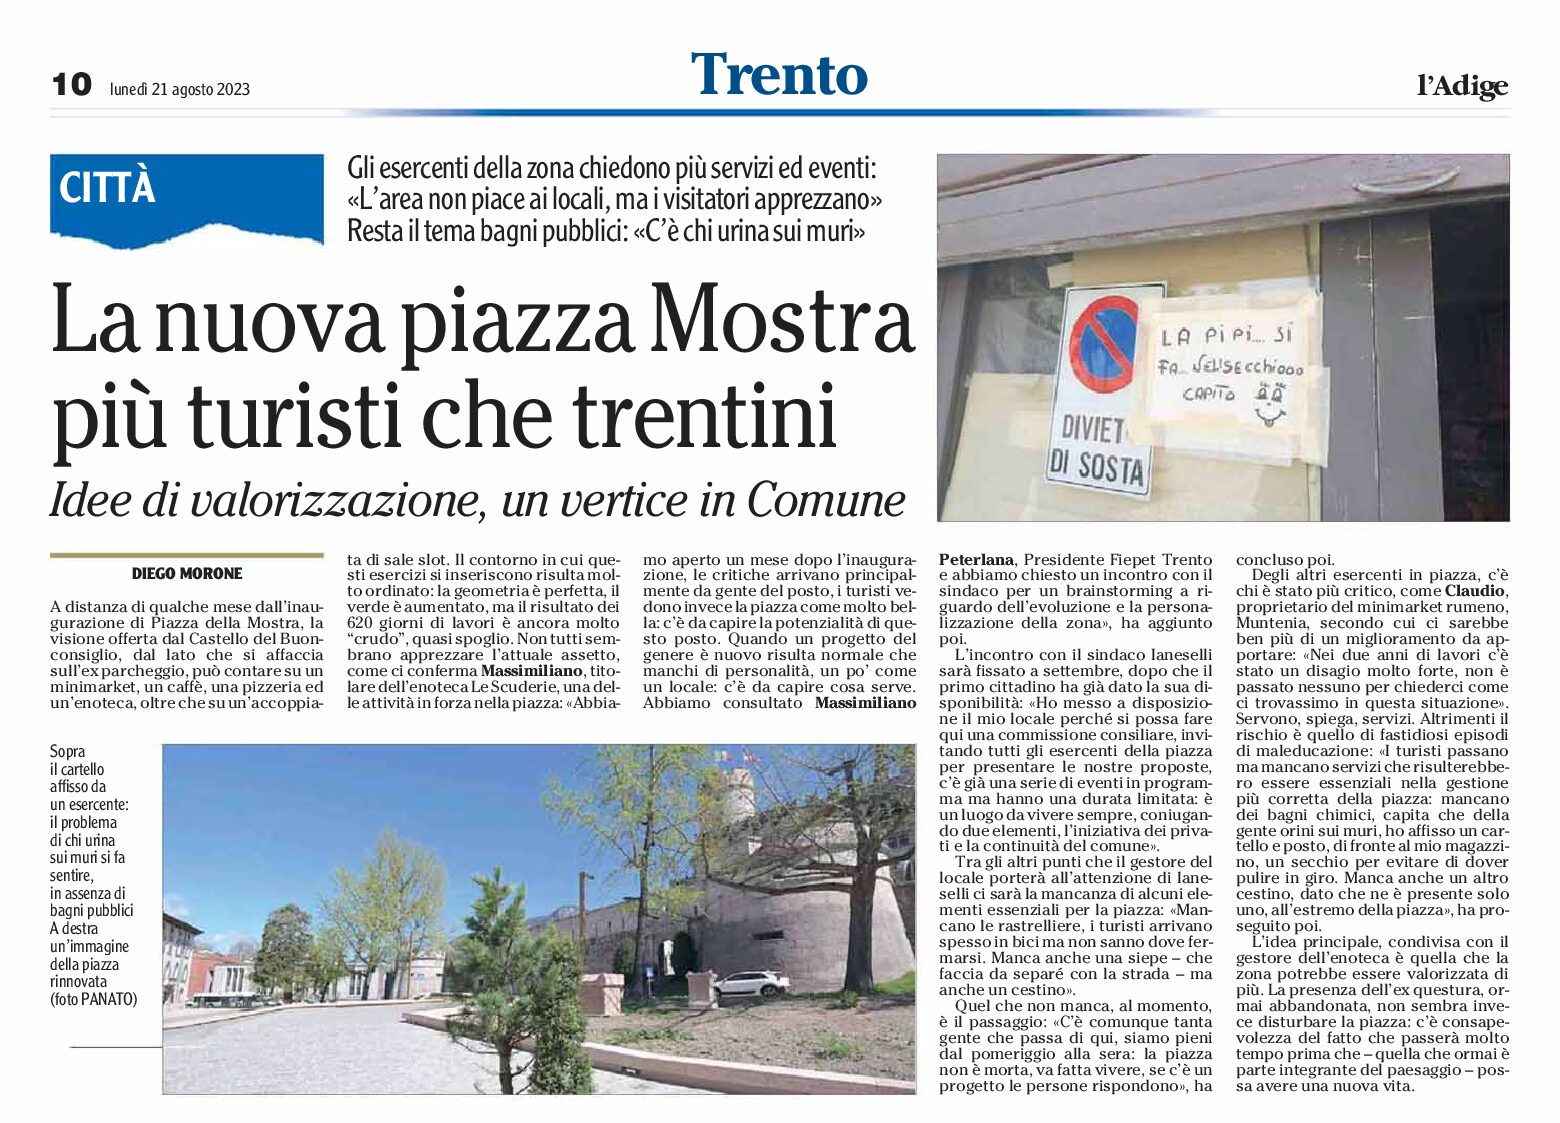 Trento: la nuova piazza Mostra, più turisti che trentini